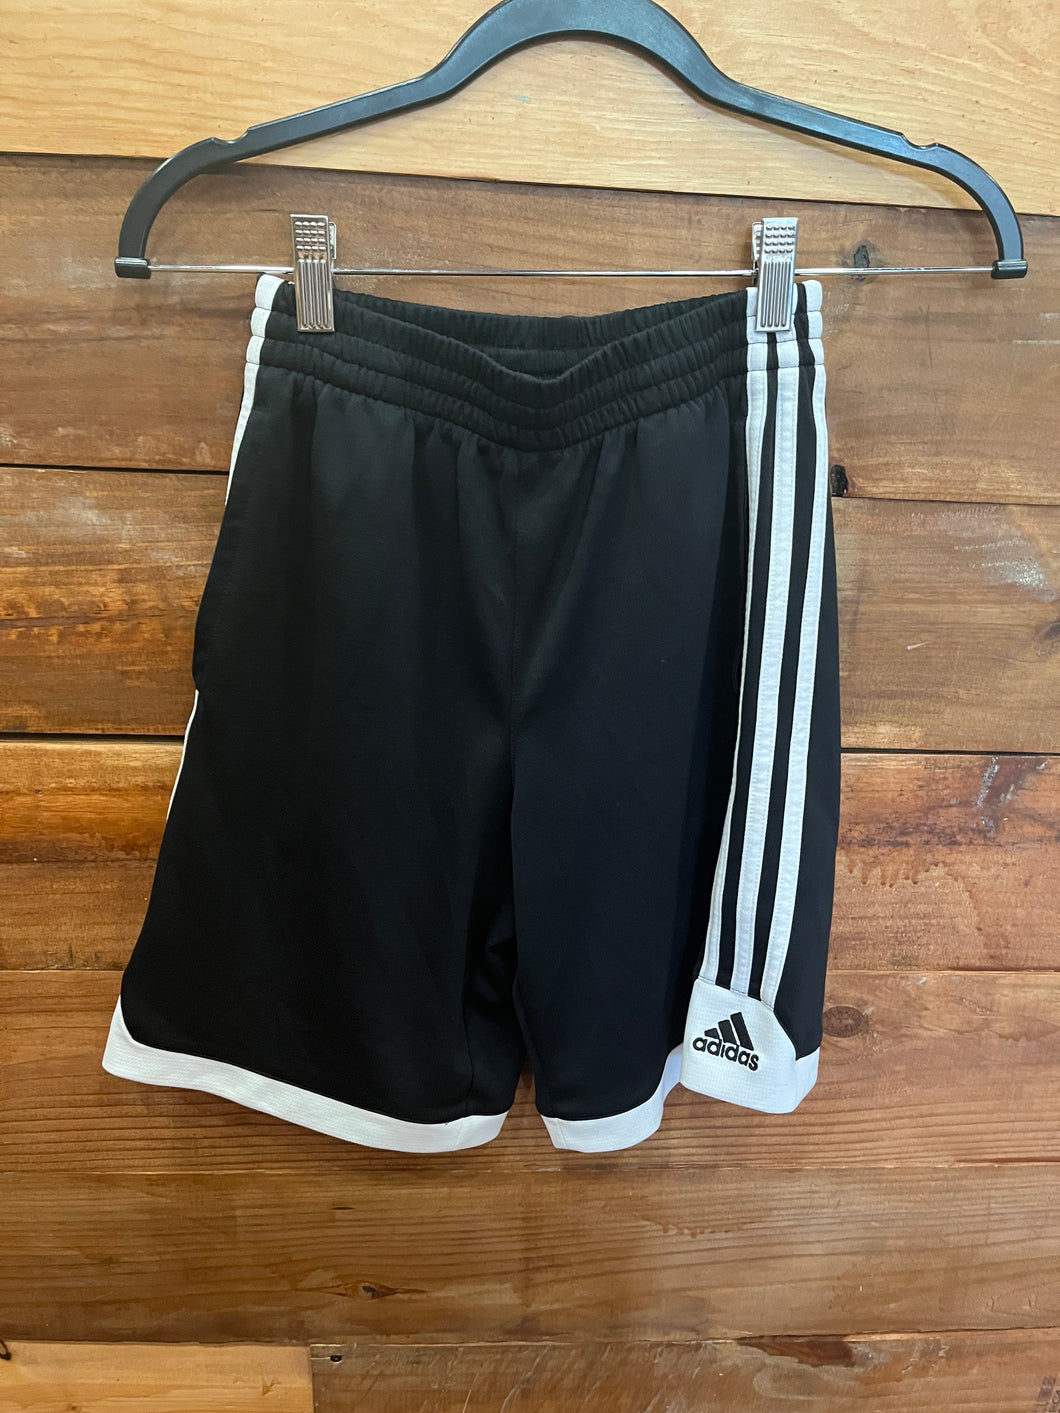 Adidas Black Shorts Size 10-12